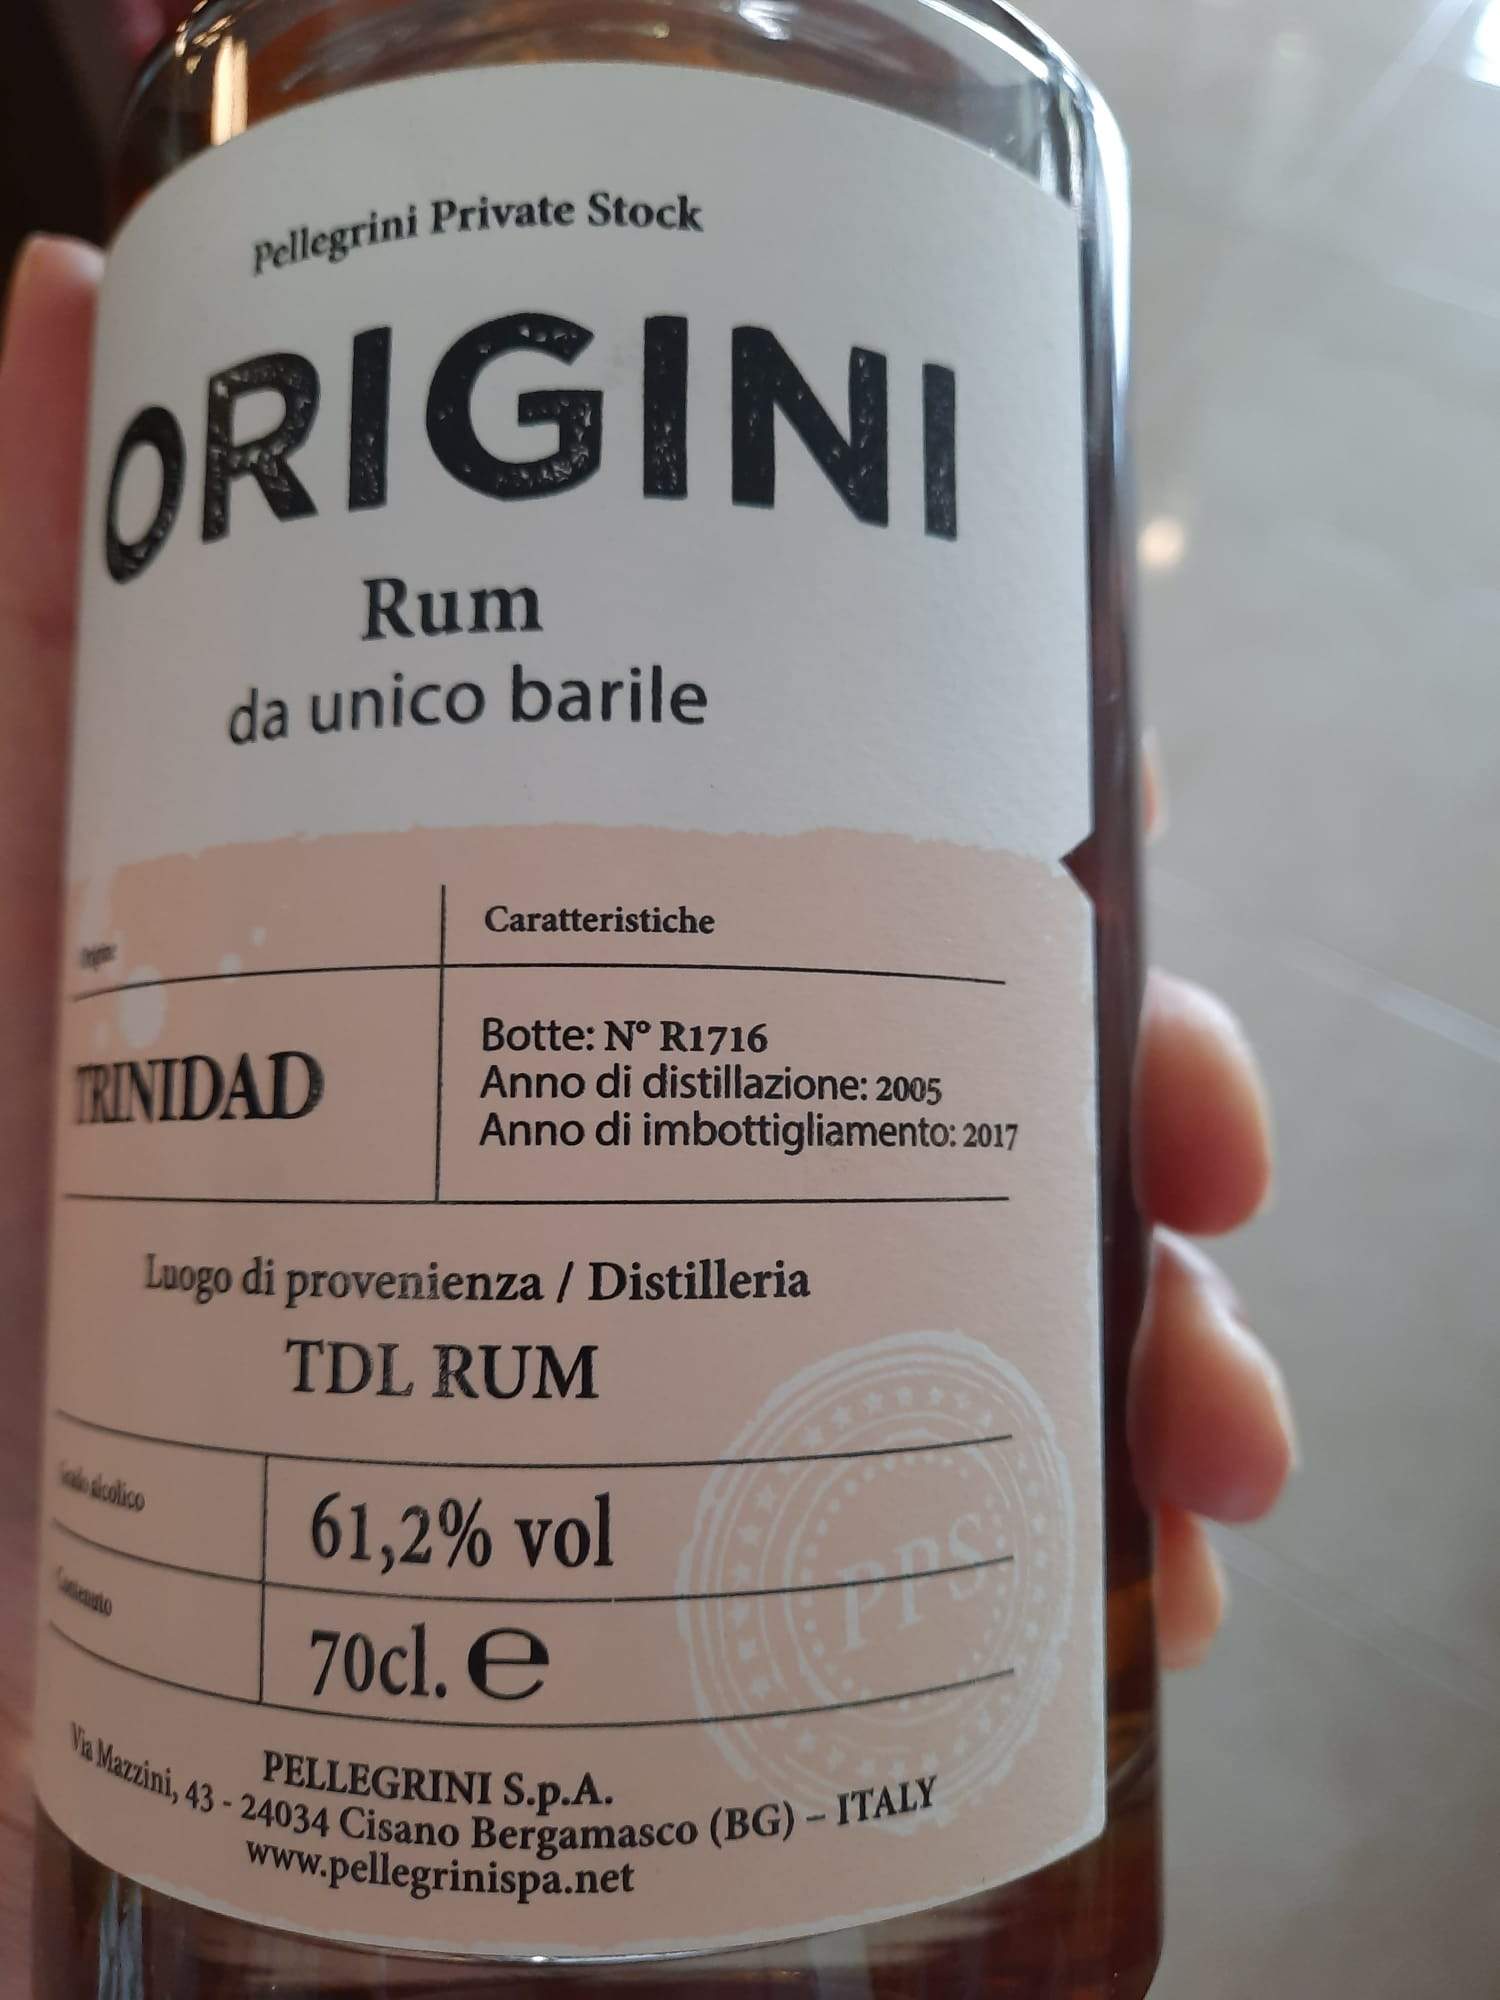 Rum Origini Trinidad TDL Rum Pellegrini Private Stock